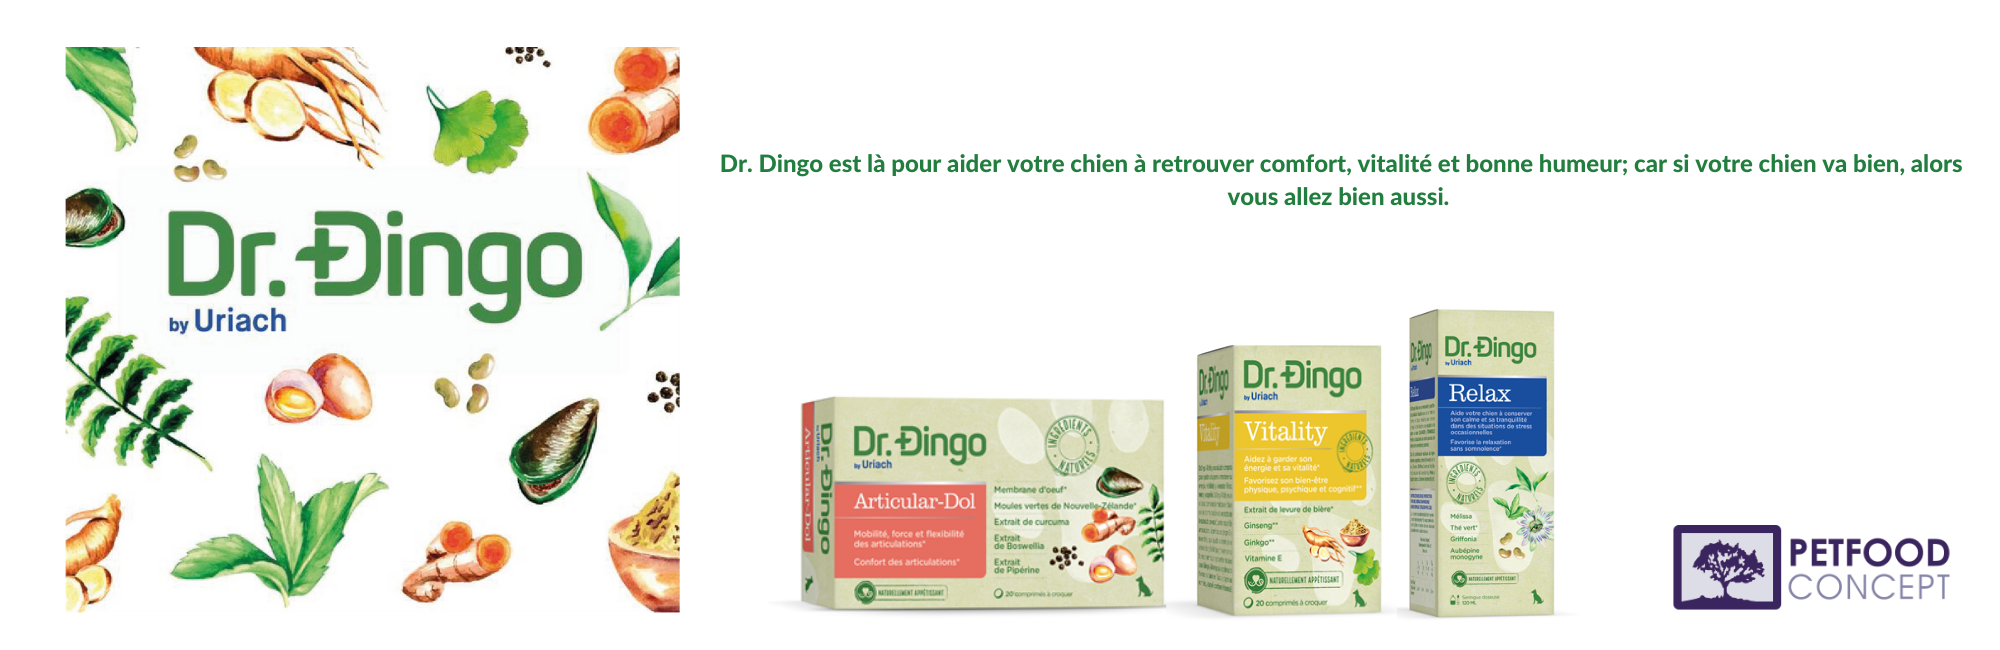 Dr.-Dingo-est-là-pour-aider-votre-chien-à-retrouver-comfort-vitalité-et-bonne-humeur-car-si-votre-chien-va-bien-alors-vous-allez-bien-aussi.